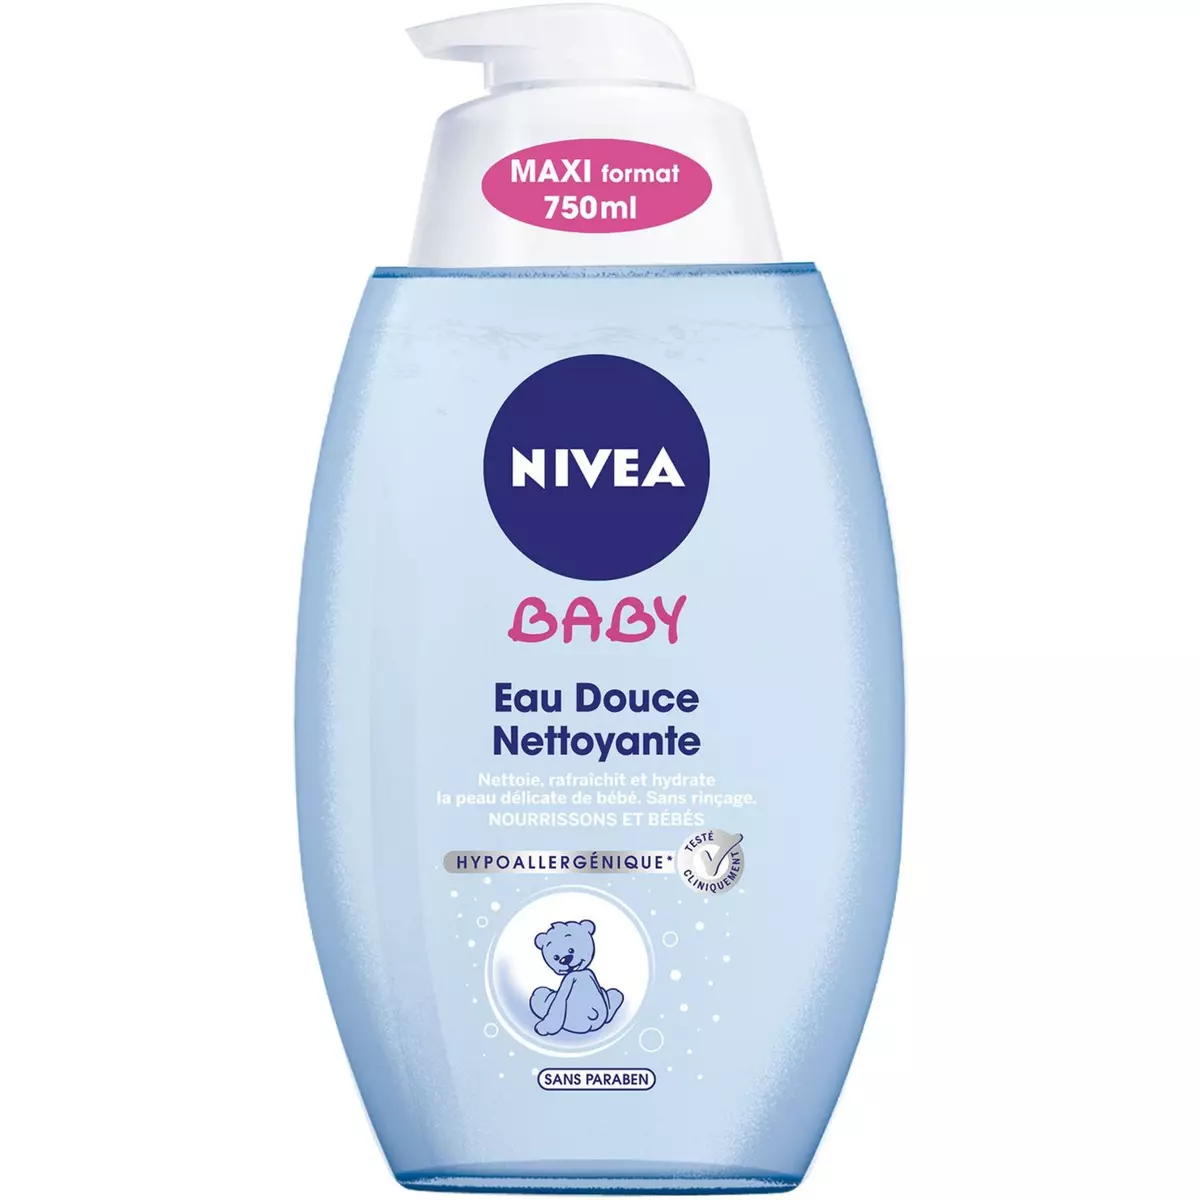 NIVEA BABY Eau nettoyante et hydratante pour nourissons et bébés 750lml